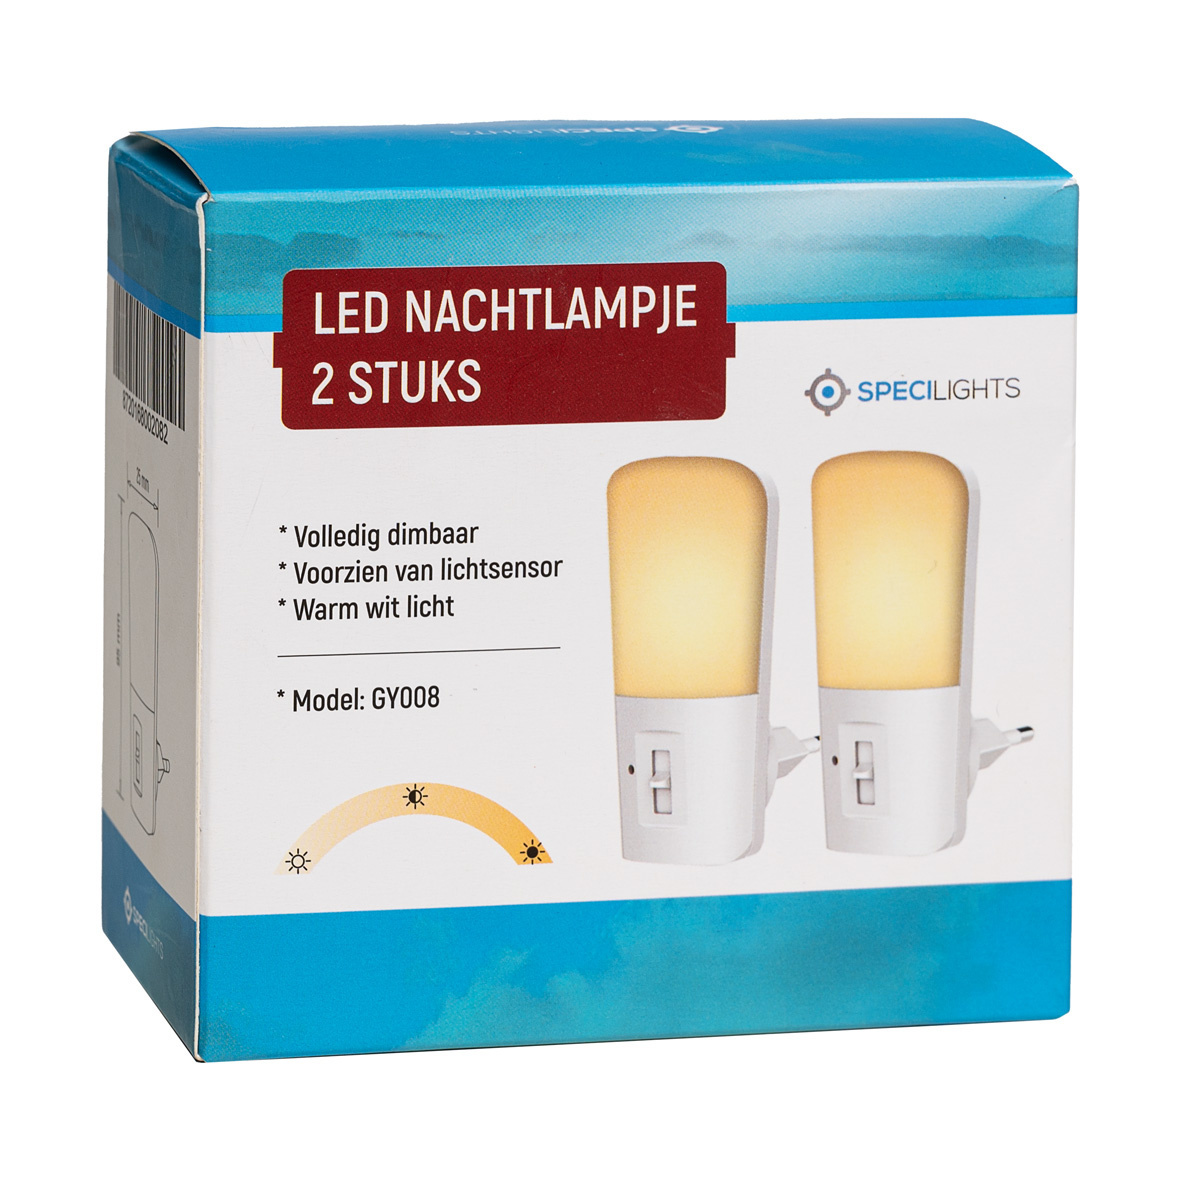 LED Nachtlampje Stopcontact stuks volledig dimbaar - van lichtsensor - Warm licht - LedlampshopXL